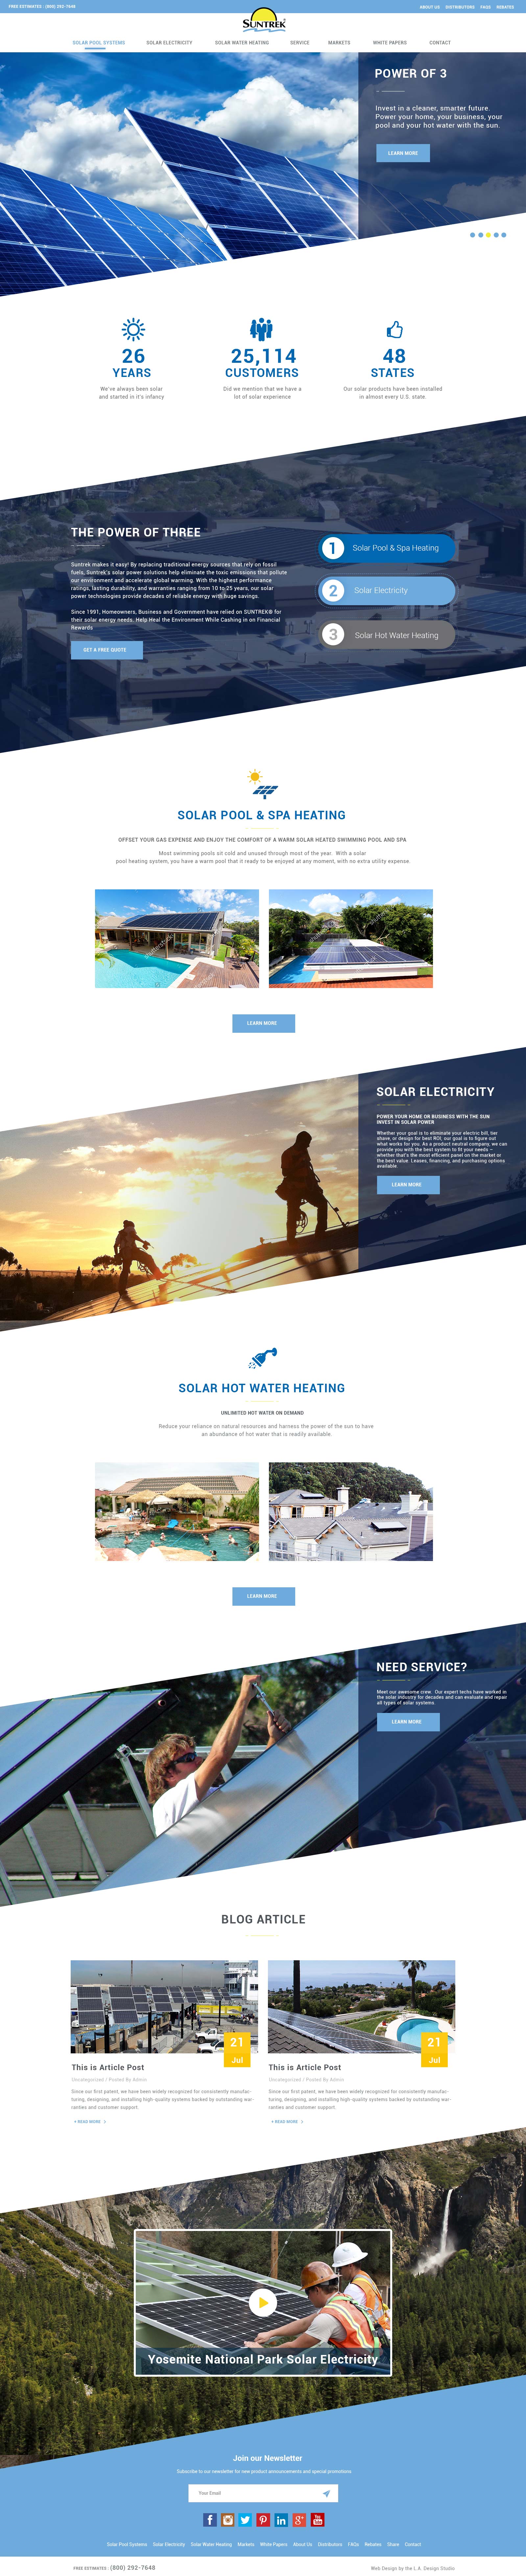 Suntrek Solar Company Web Design